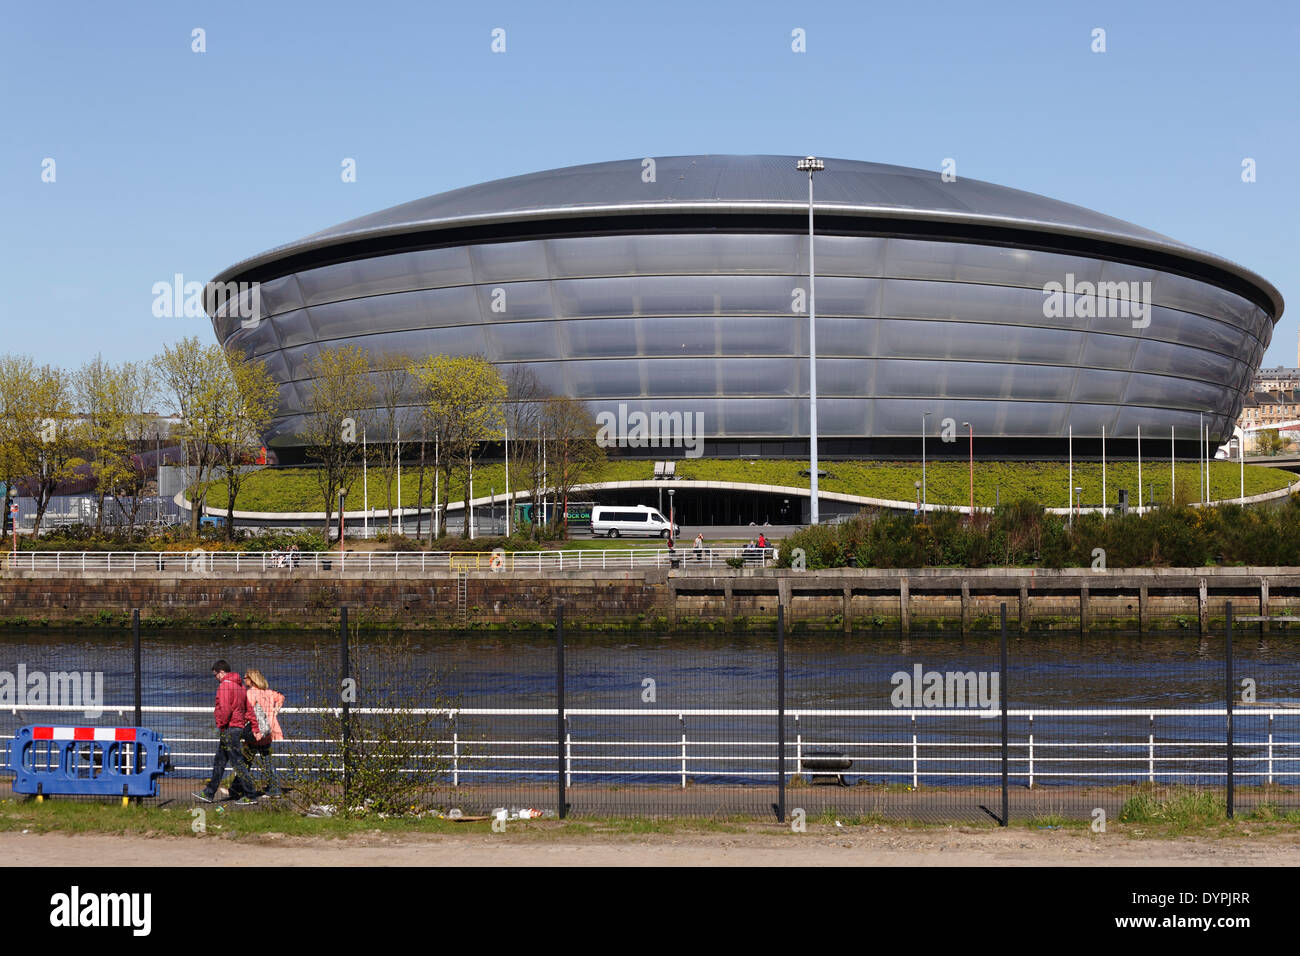 La SSE Hydro Arena sul SEC Centre di Glasgow, Scozia, Regno Unito Foto Stock